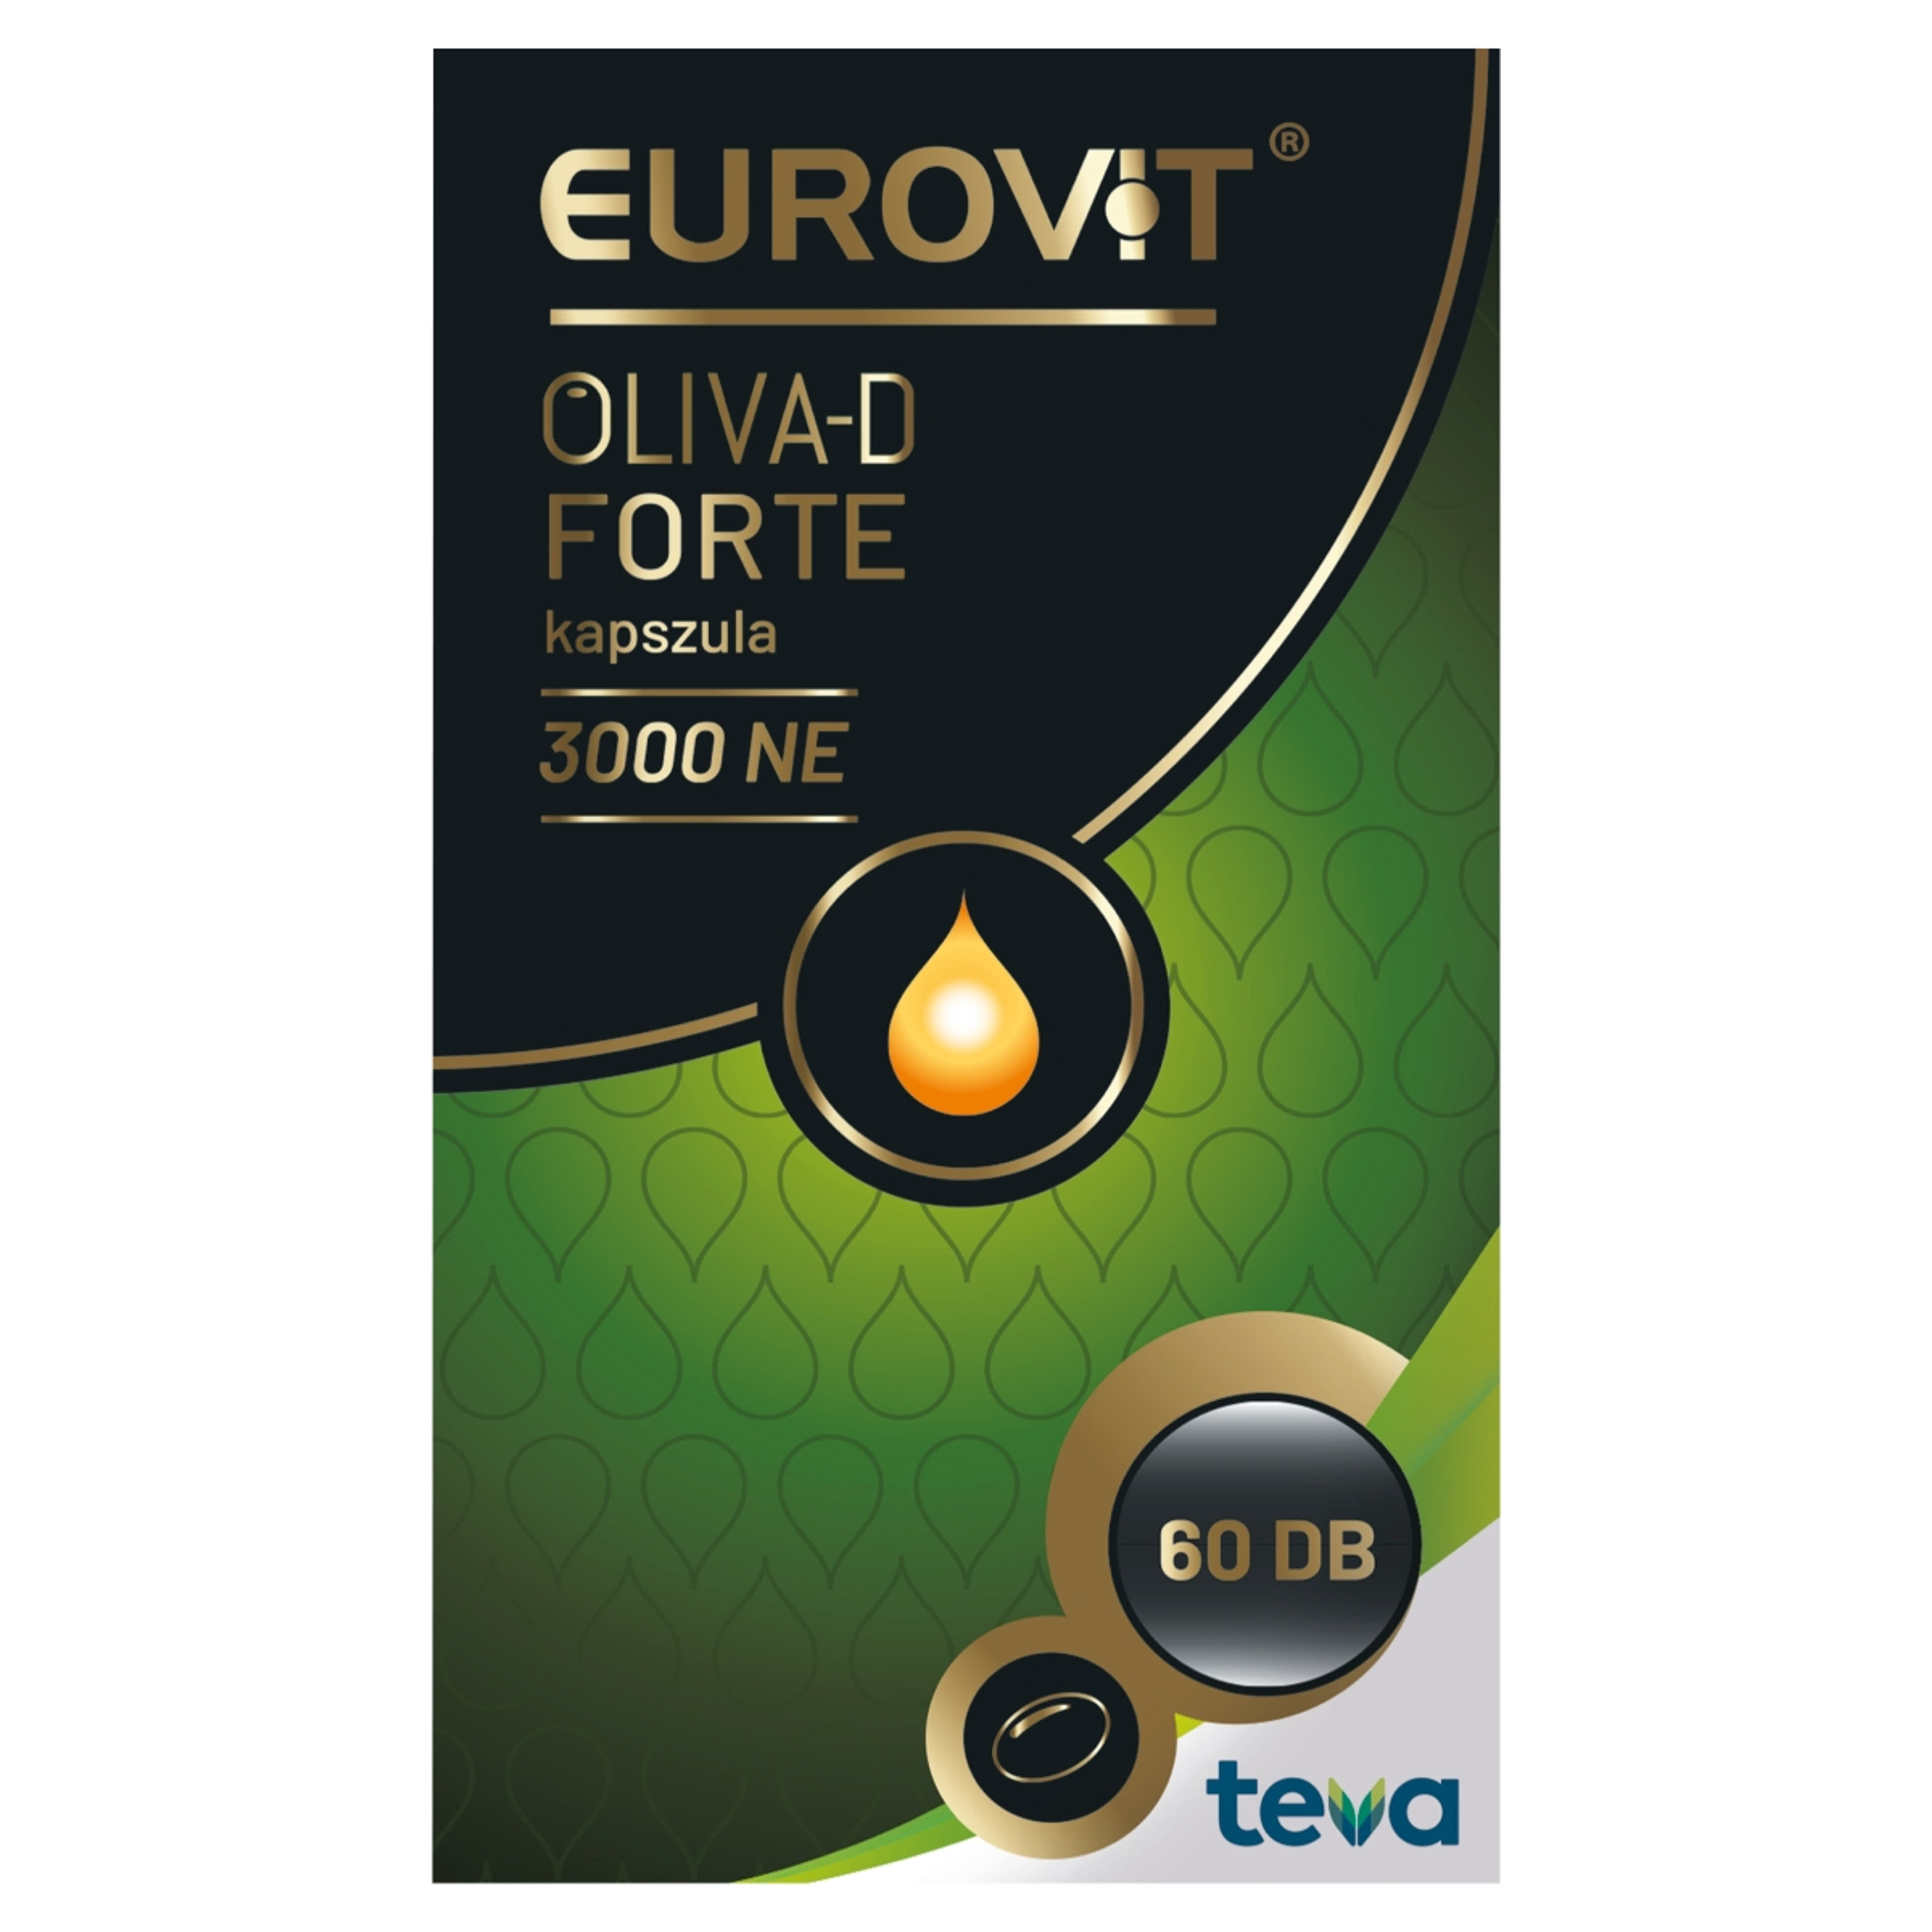 Eurovit Oliva-D 3000 NE kapszula - 60 db-1